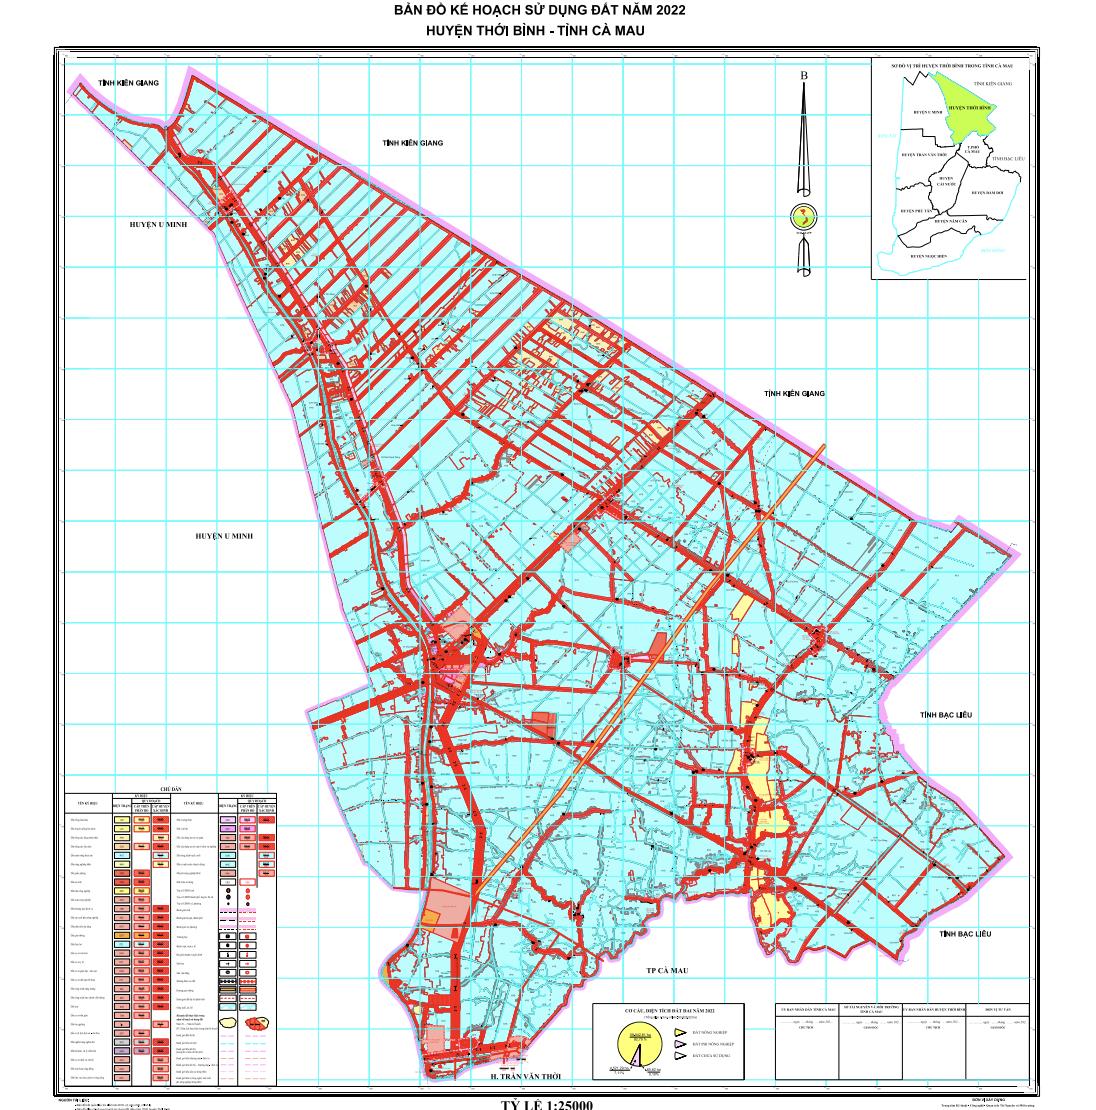 TẢI Bản đồ quy hoạch sử dụng đất Huyện Thới Bình đến năm 2030